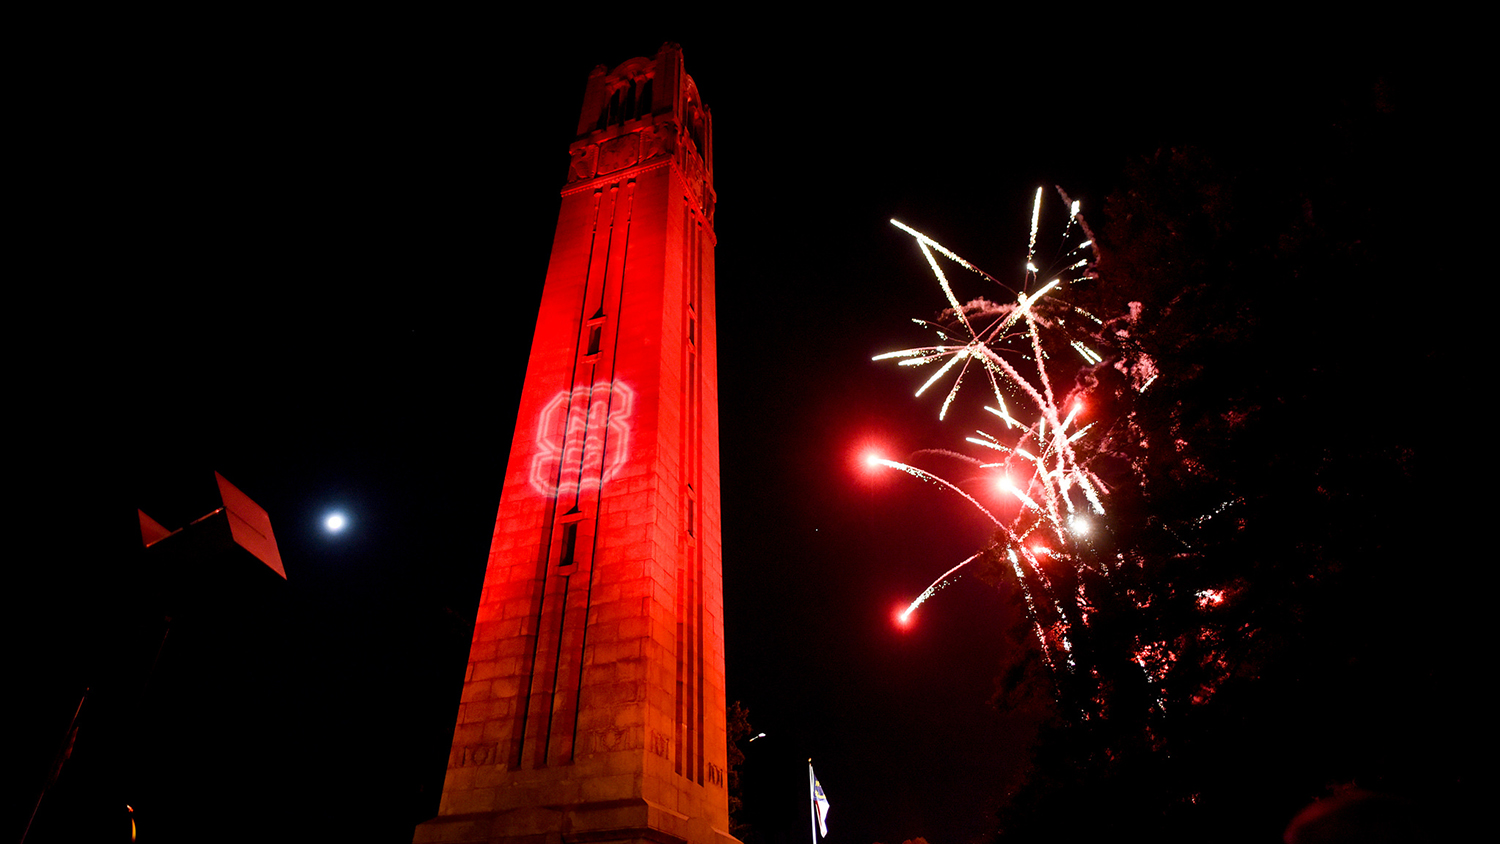 钟楼被烟花点亮的红色照片。